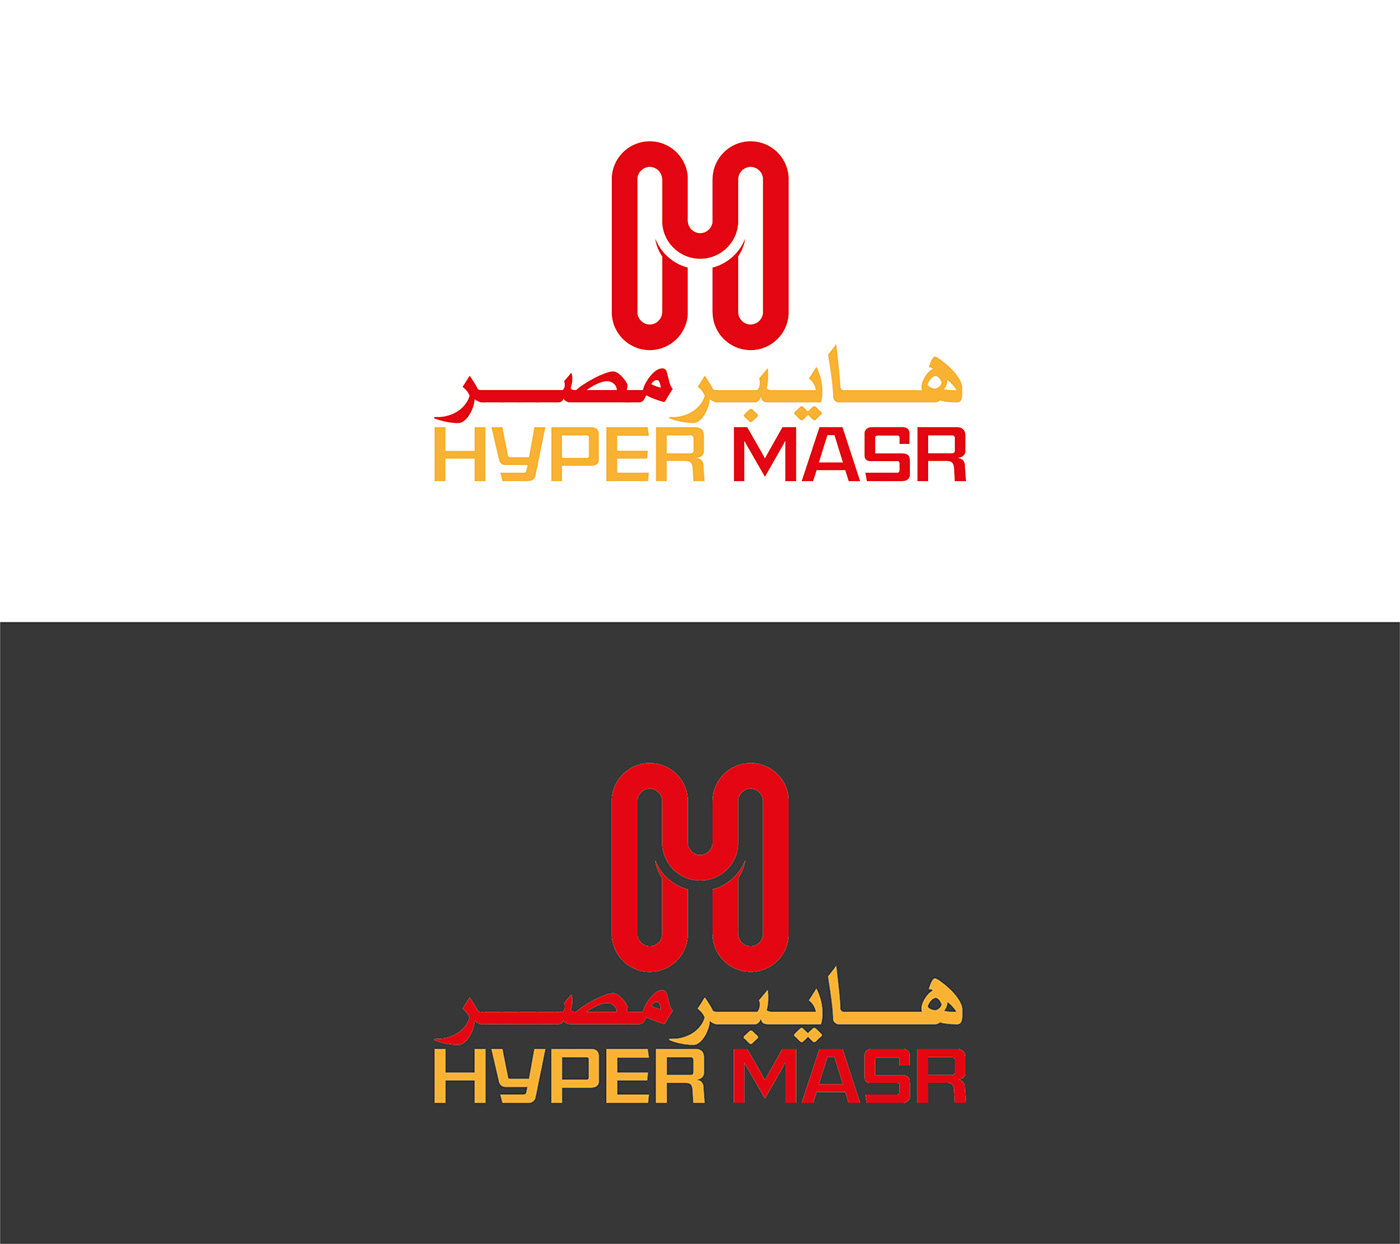 HYPER LOGO hyper hyperlapse Logo Design Logotipo logo logos Logotype hypercasual